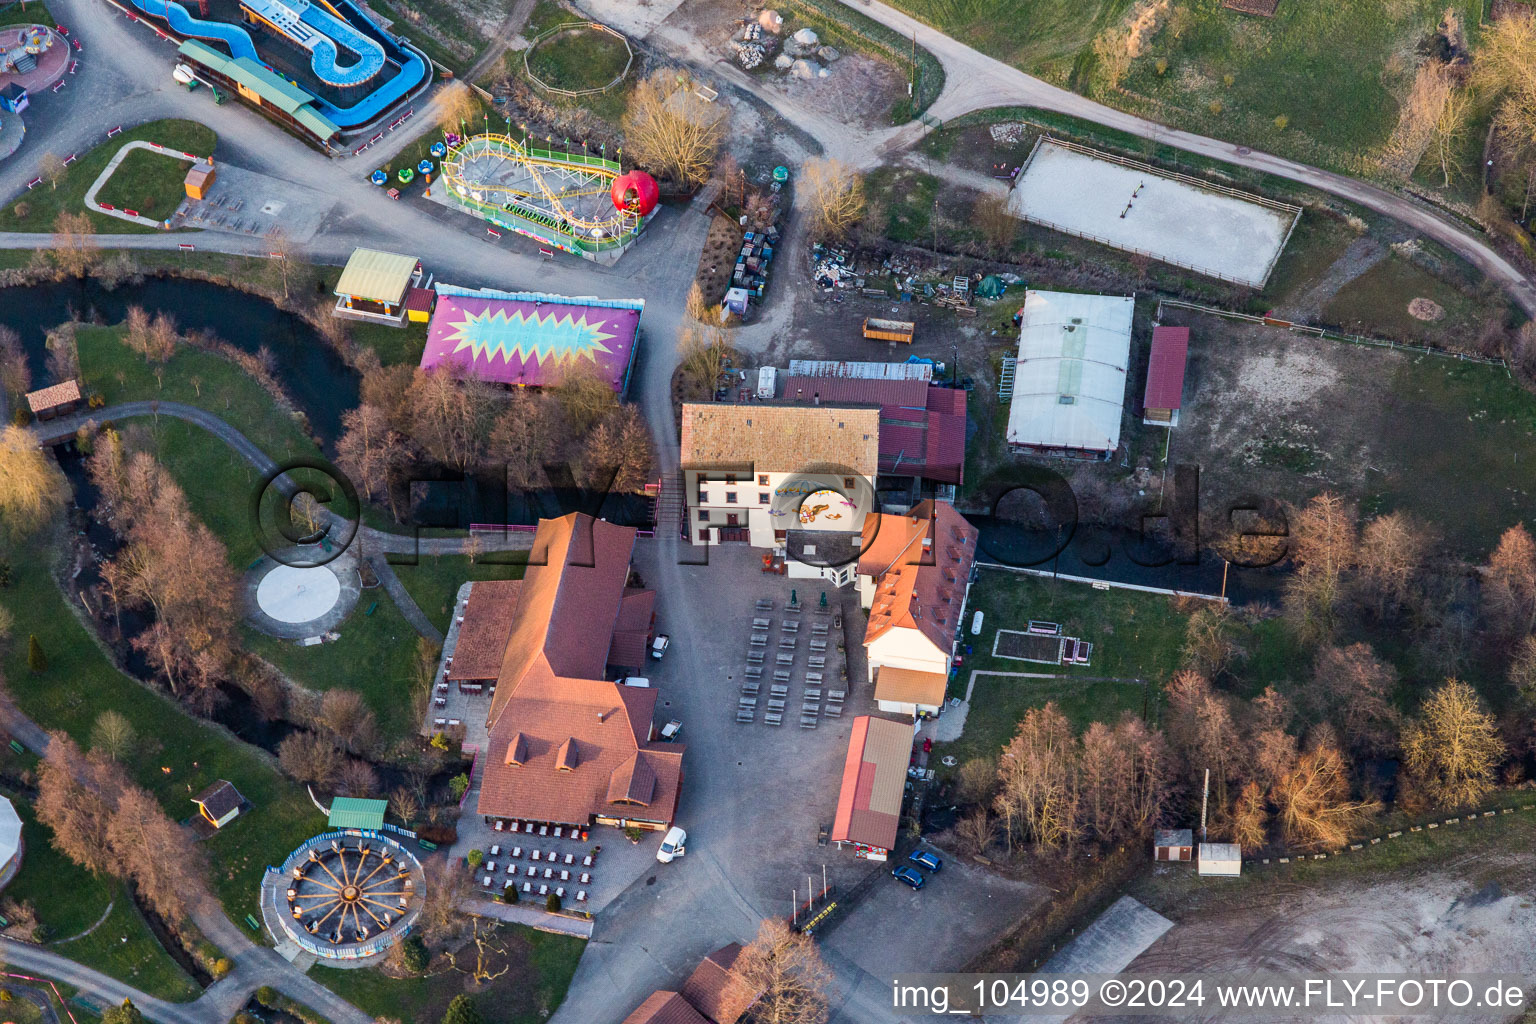 Base de loisirs - Parc d'attractions Didiland à Morsbronn-les-Bains dans le département Bas Rhin, France depuis l'avion